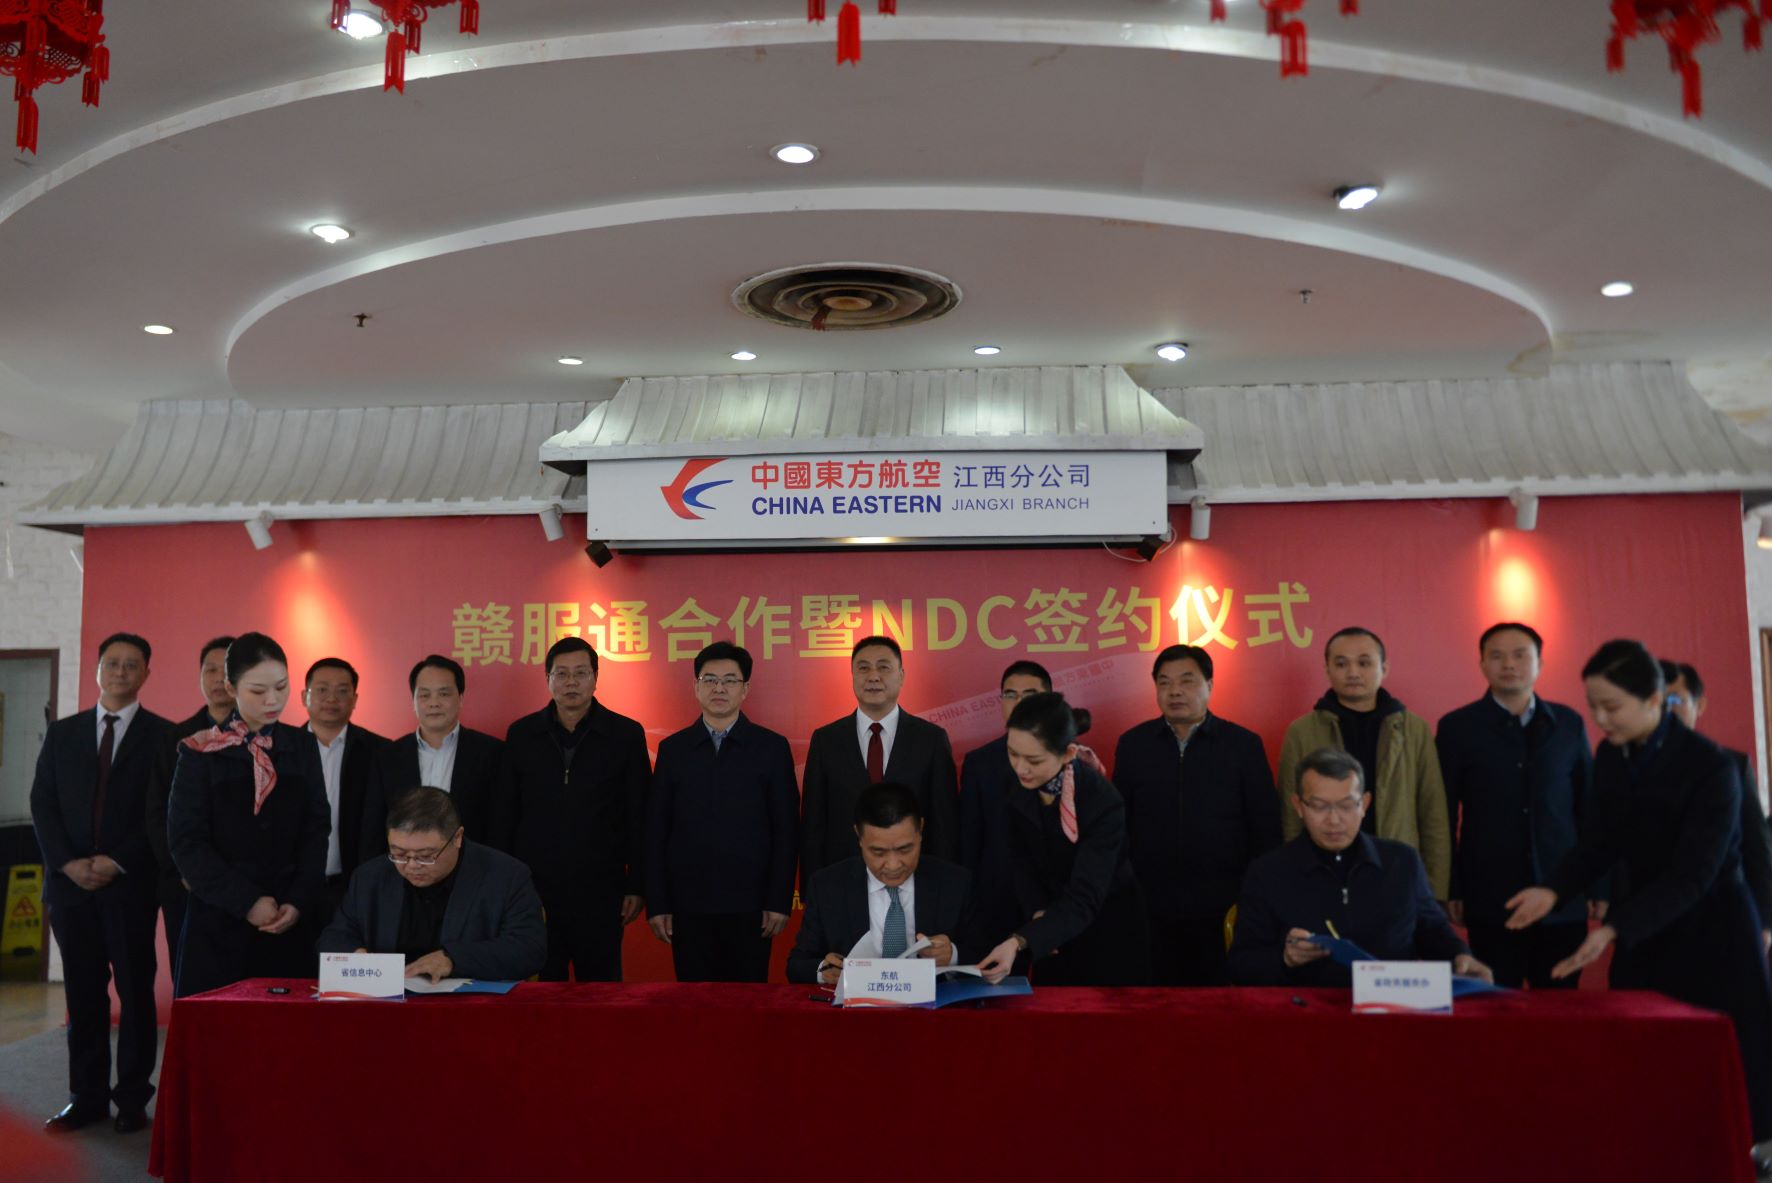 中国东航签约进驻“赣服通” 集成新服务助力新发展——NDC赋能共建数字政务和智慧航空服务平台